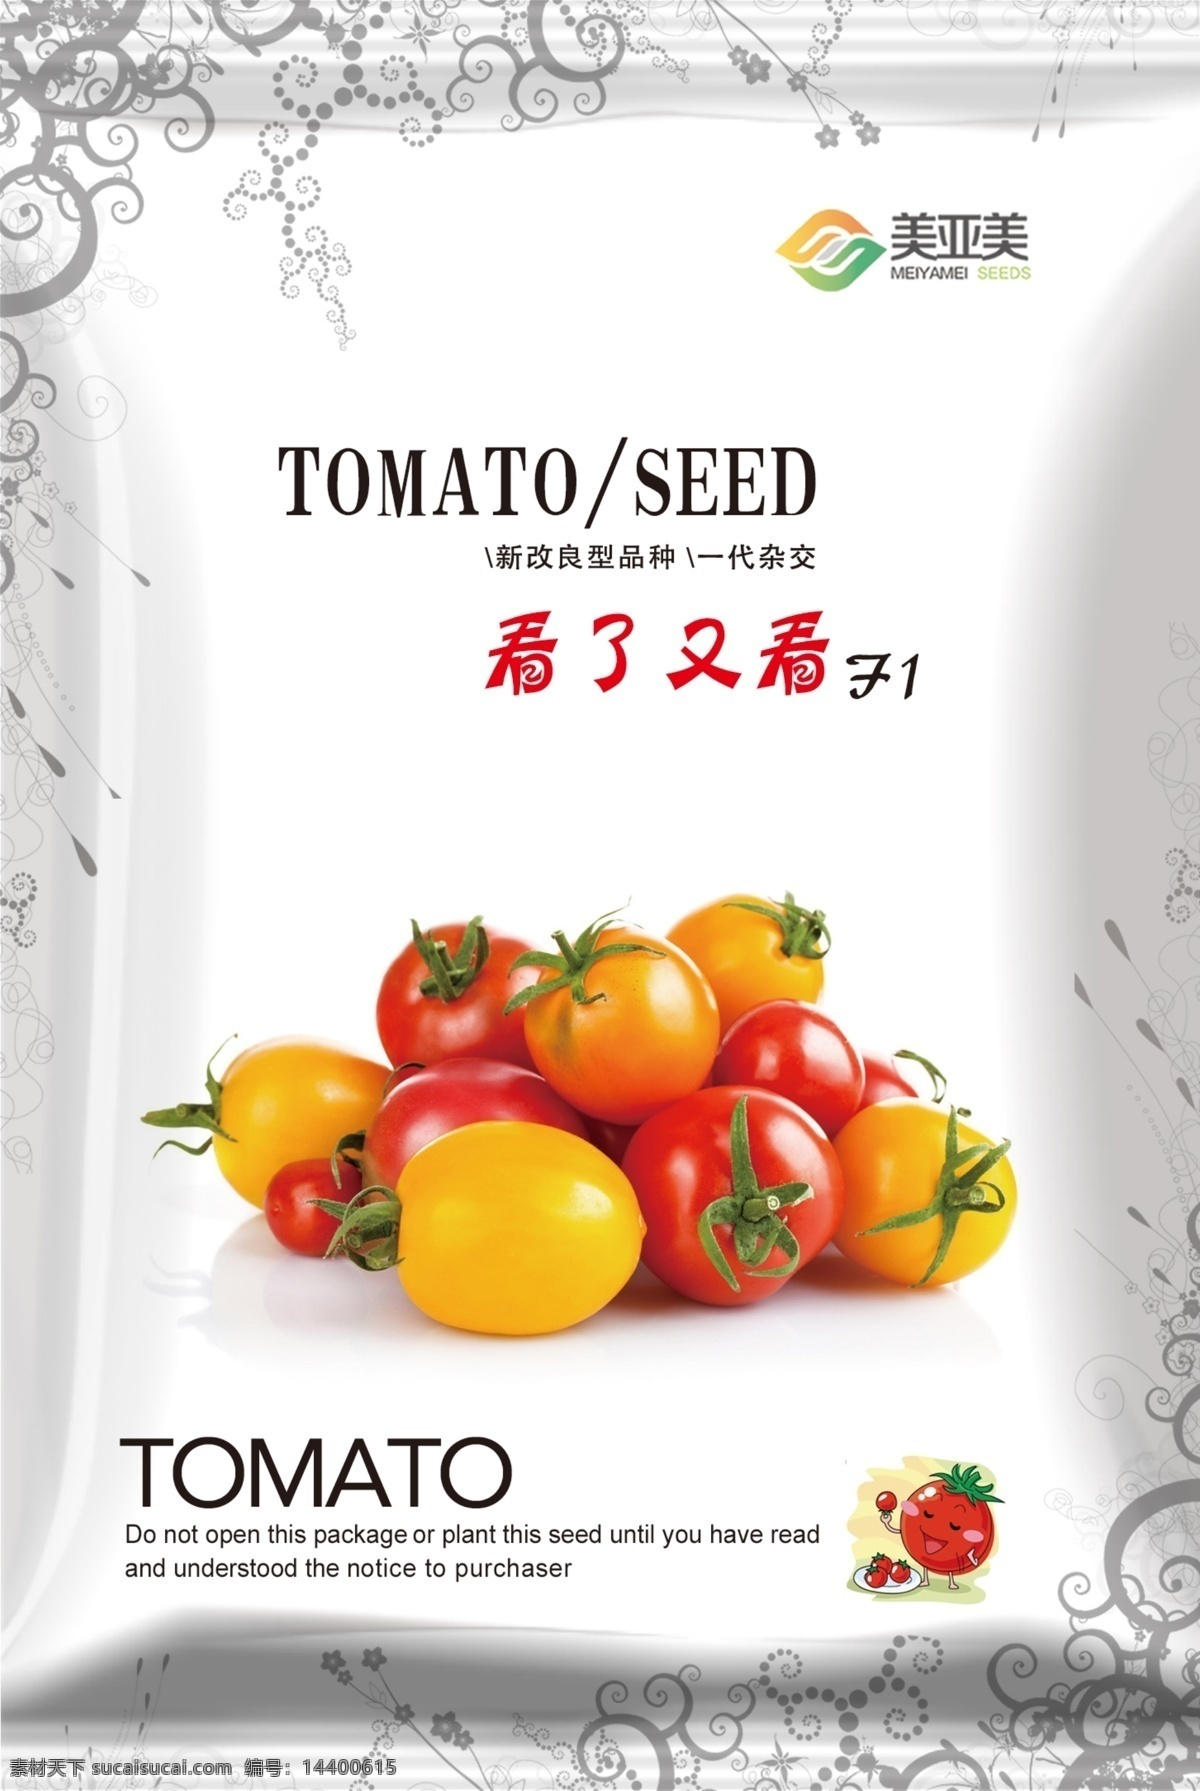 番茄 种子 包装设计 种子包装 番茄种子 红番茄 农业包装 包装袋 ps 矢量图 种子包装设计